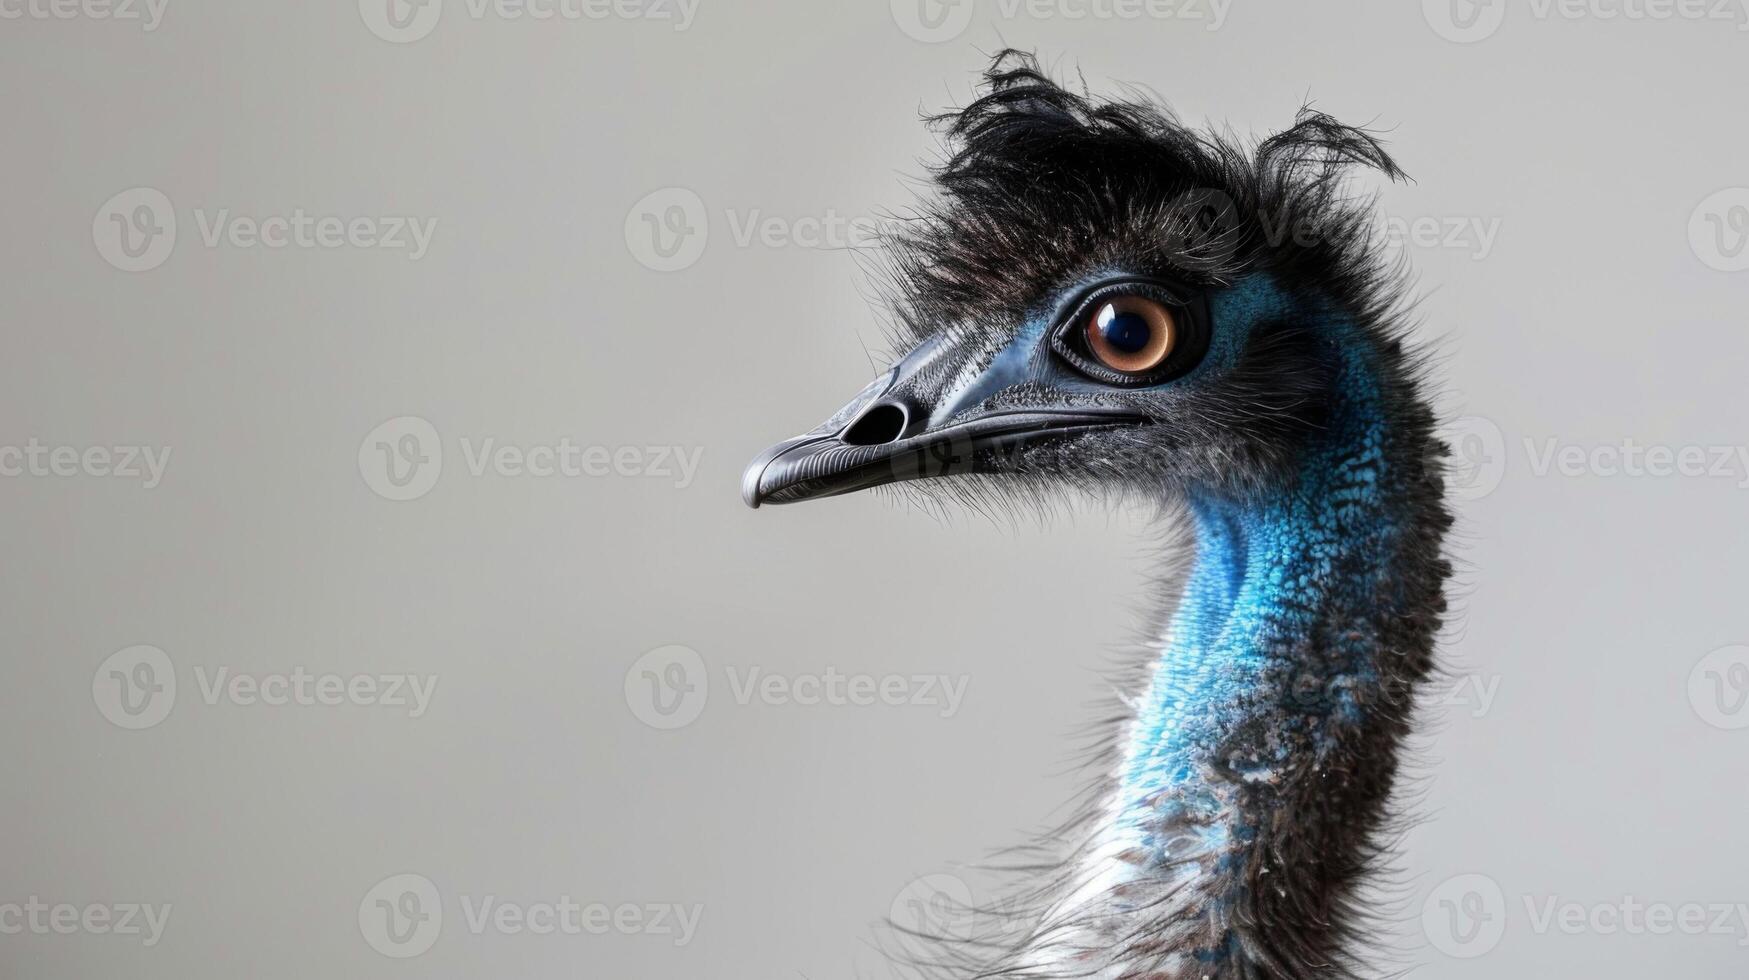 Close-up emu portrait showcasing its feathers, beak, eyes, and vibrant blue neck photo